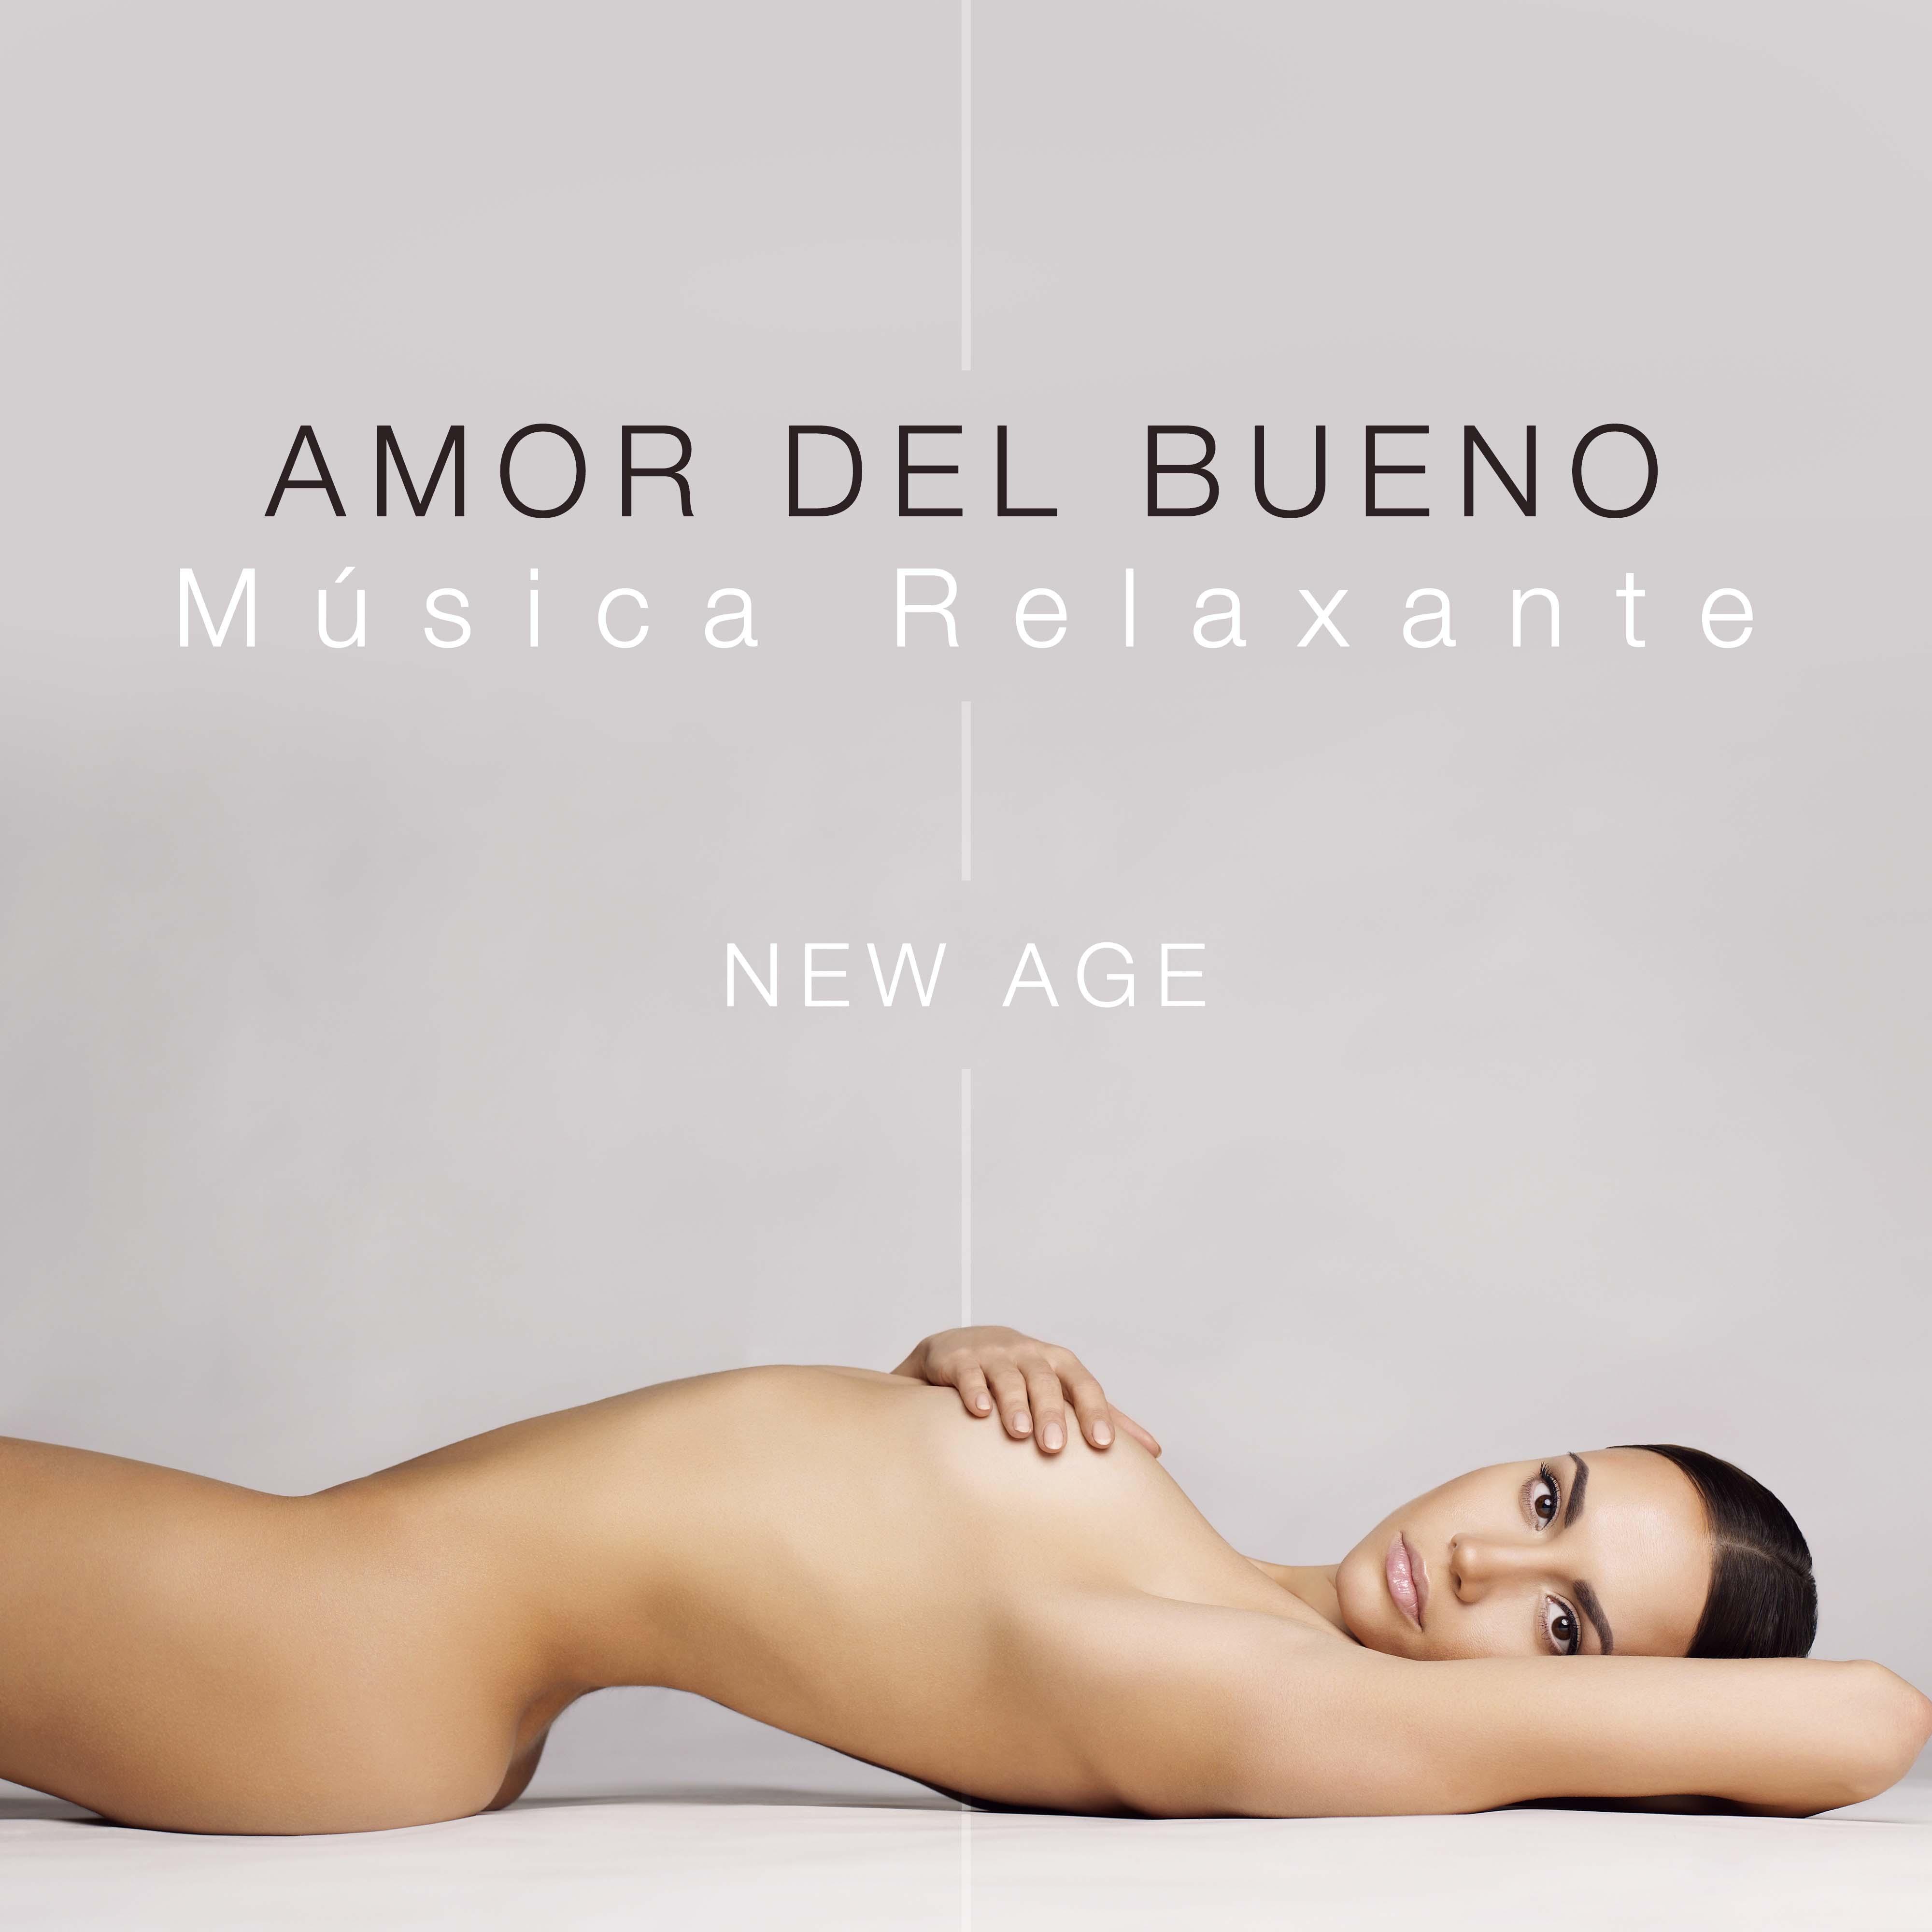 Amor del Bueno: Musica Relaxante New Age